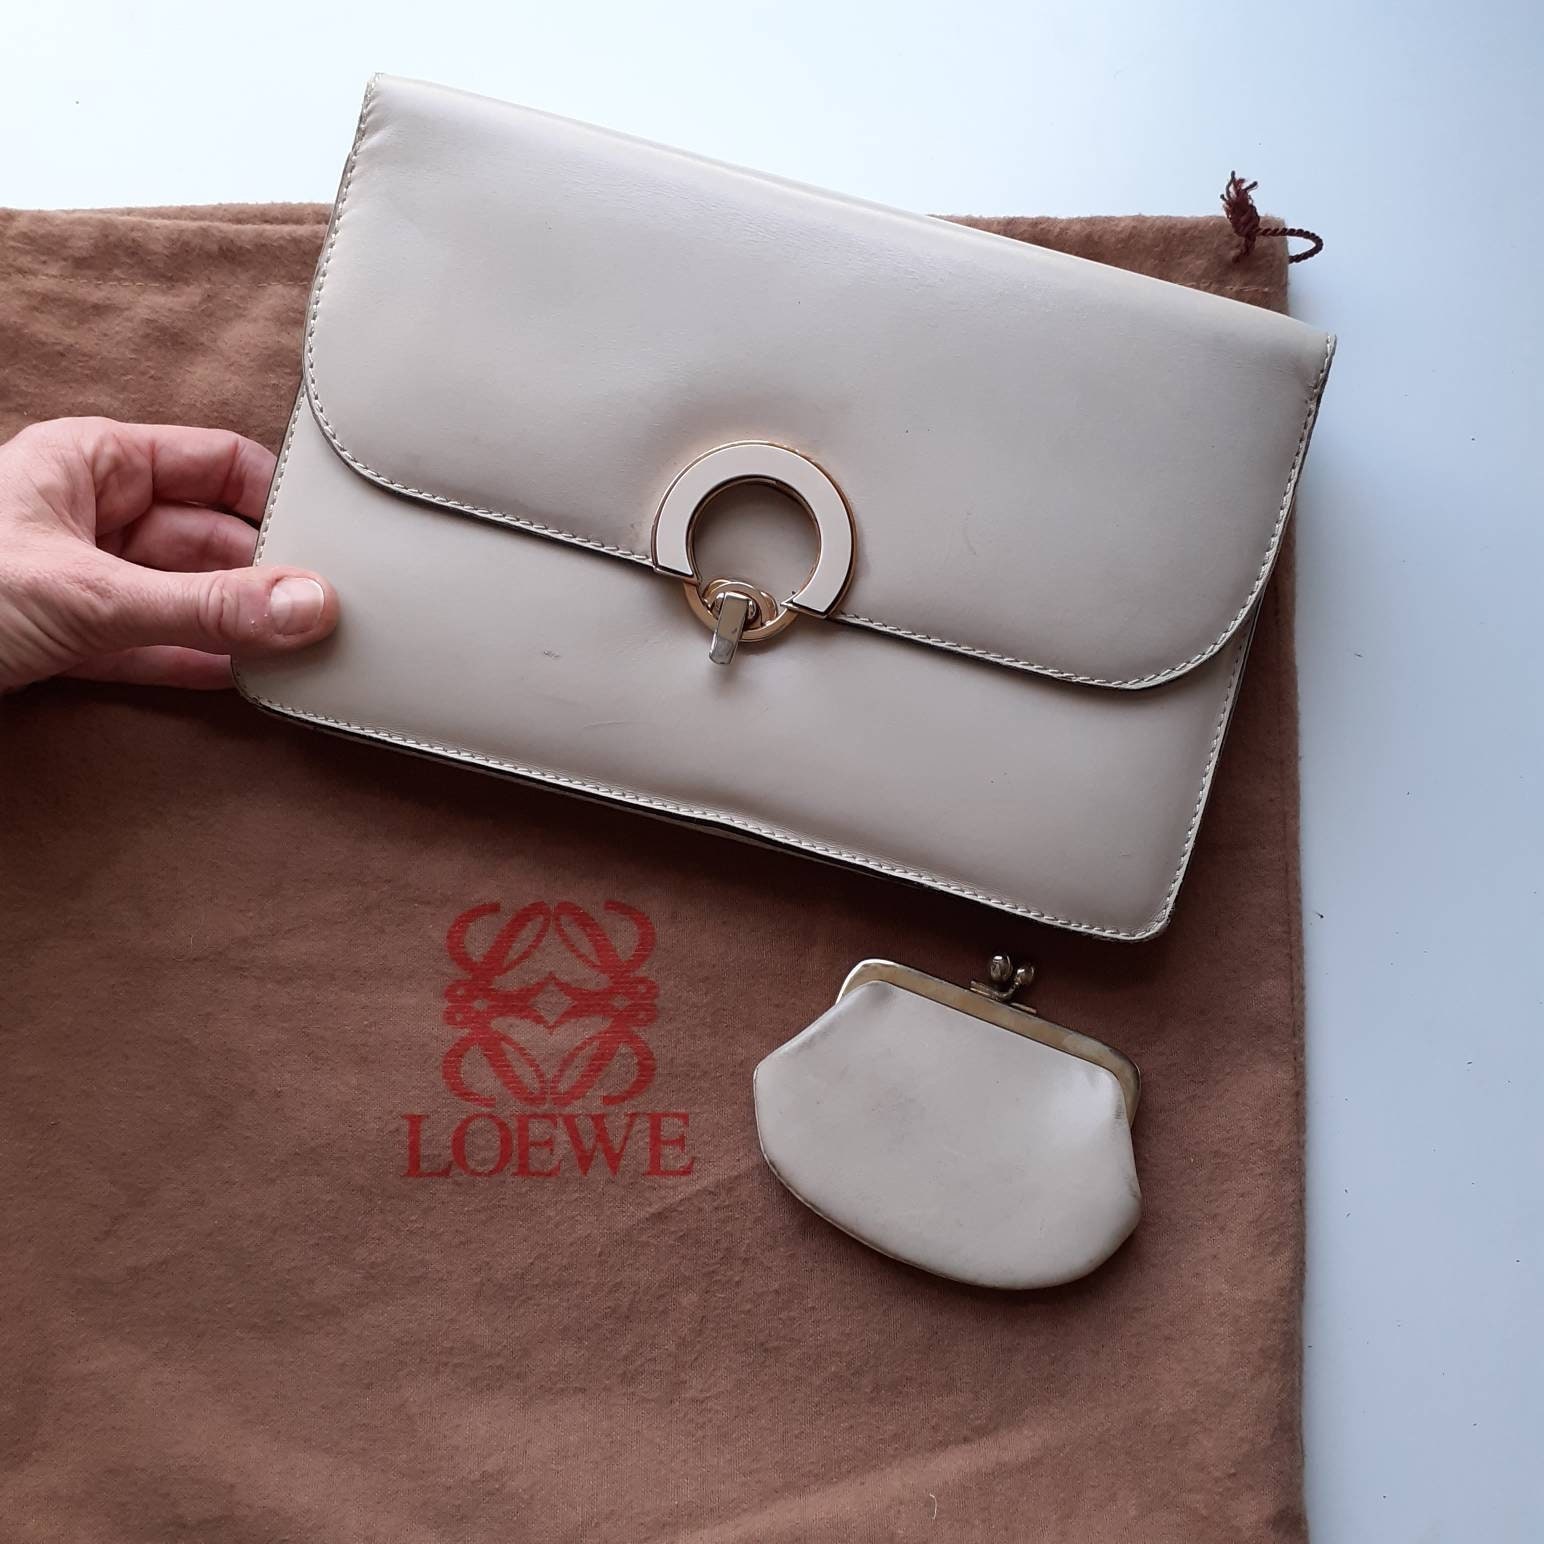 Cinturones de lujo para hombre · Accesorios en piel Loewe - LOEWE